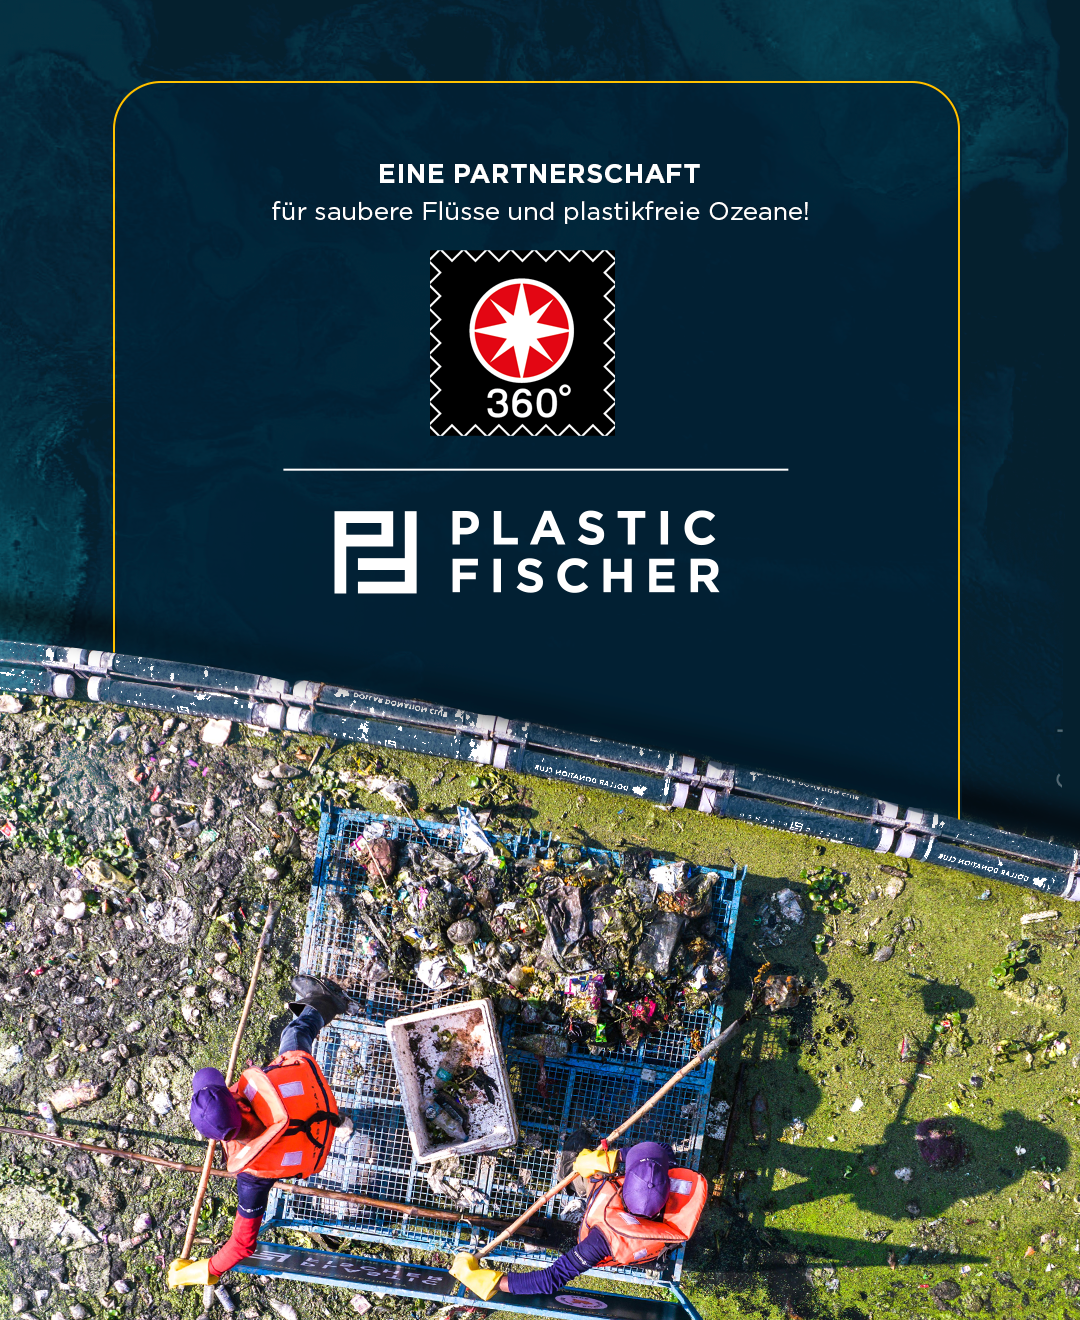 Plastik fischen aus Flüssen 1 Euro = 1 kg Plastik via Plastic Fischer